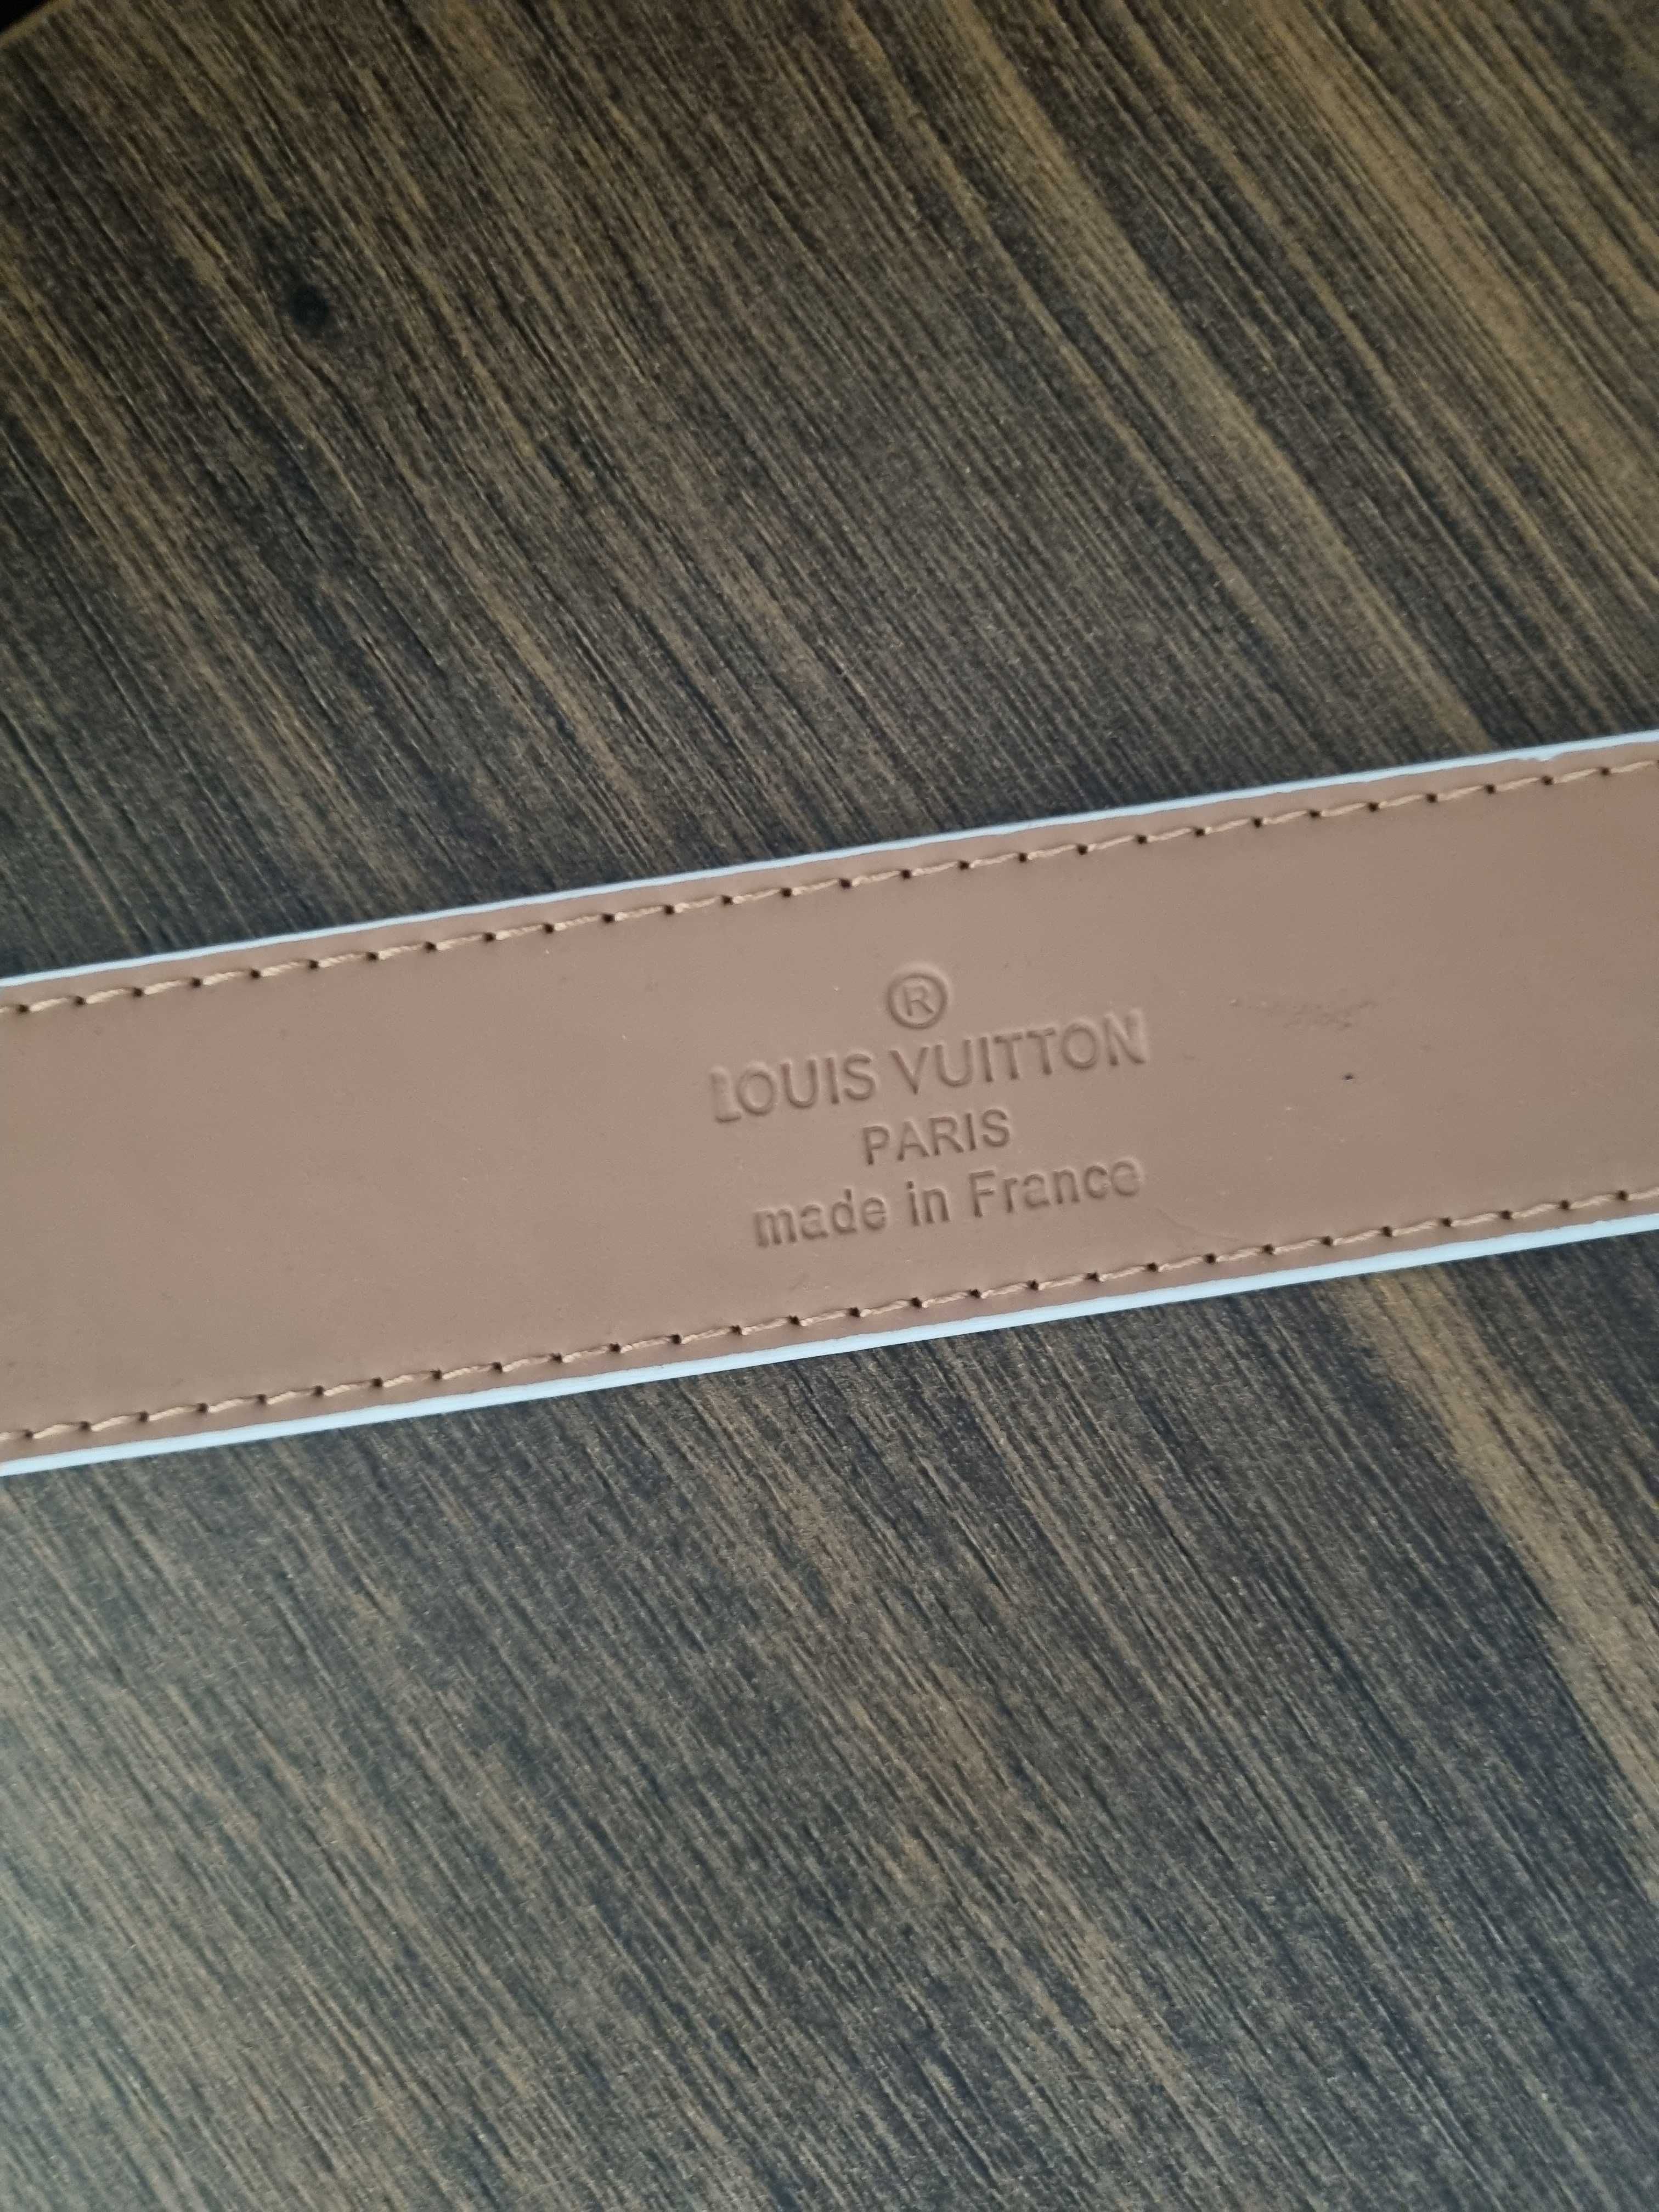 Louis Vuitton pasek do spodni 105cm/42 LV belt biały NOWY + GRATIS